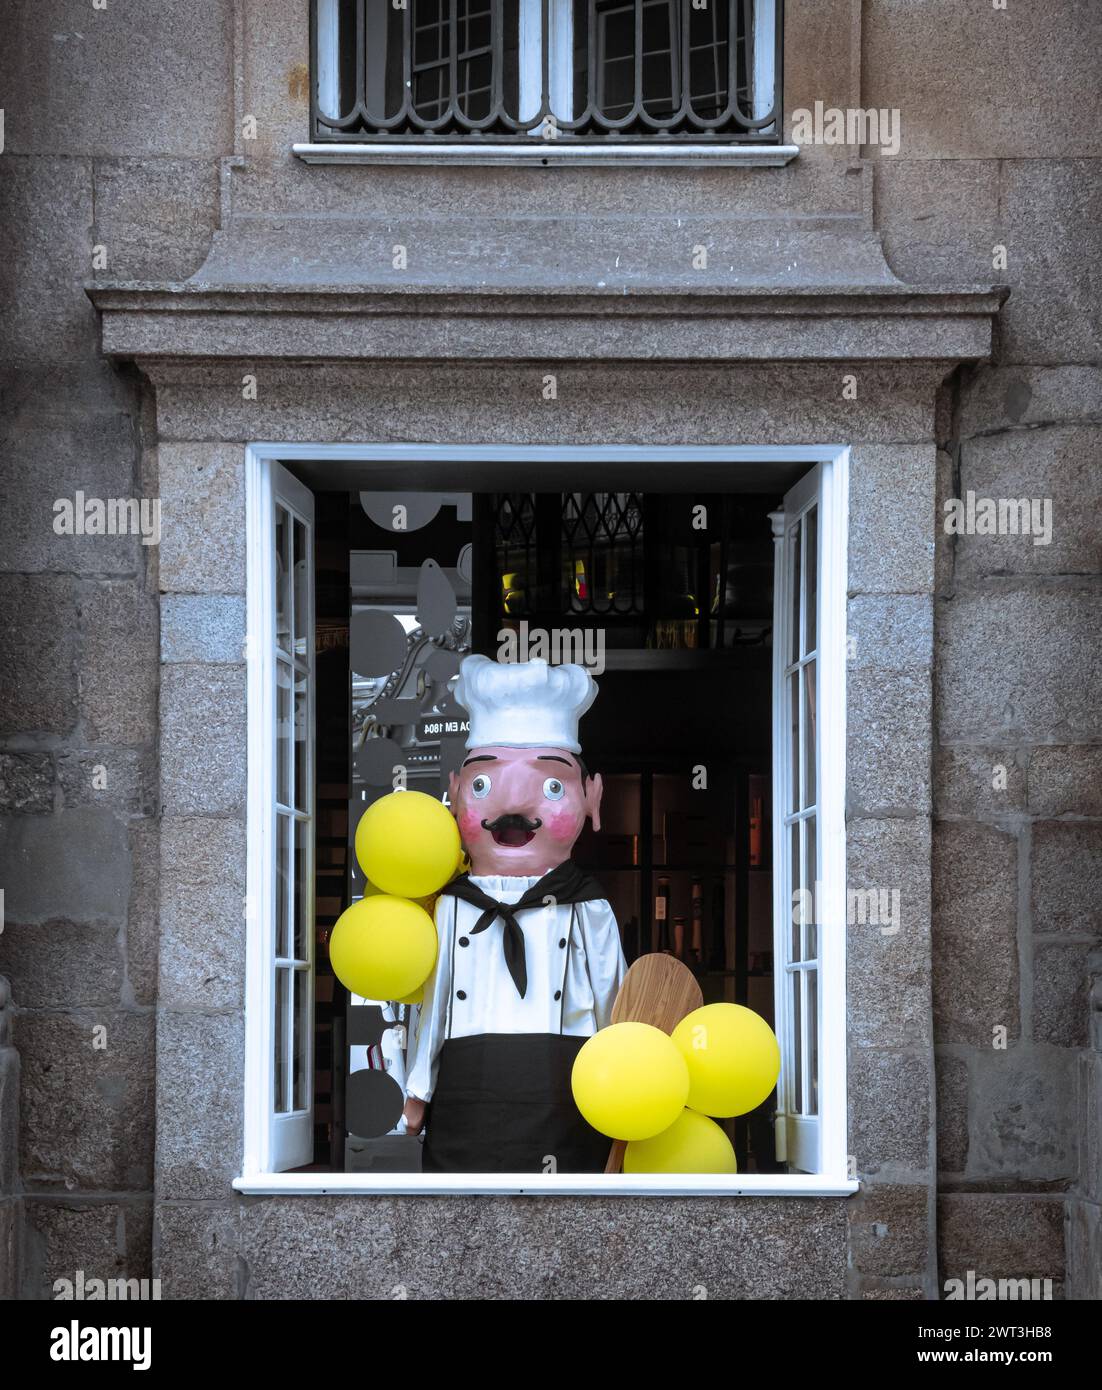 Títere de tamaño natural de chef tradicional sosteniendo globos en una gran ventana abierta en un edificio de piedra Foto de stock